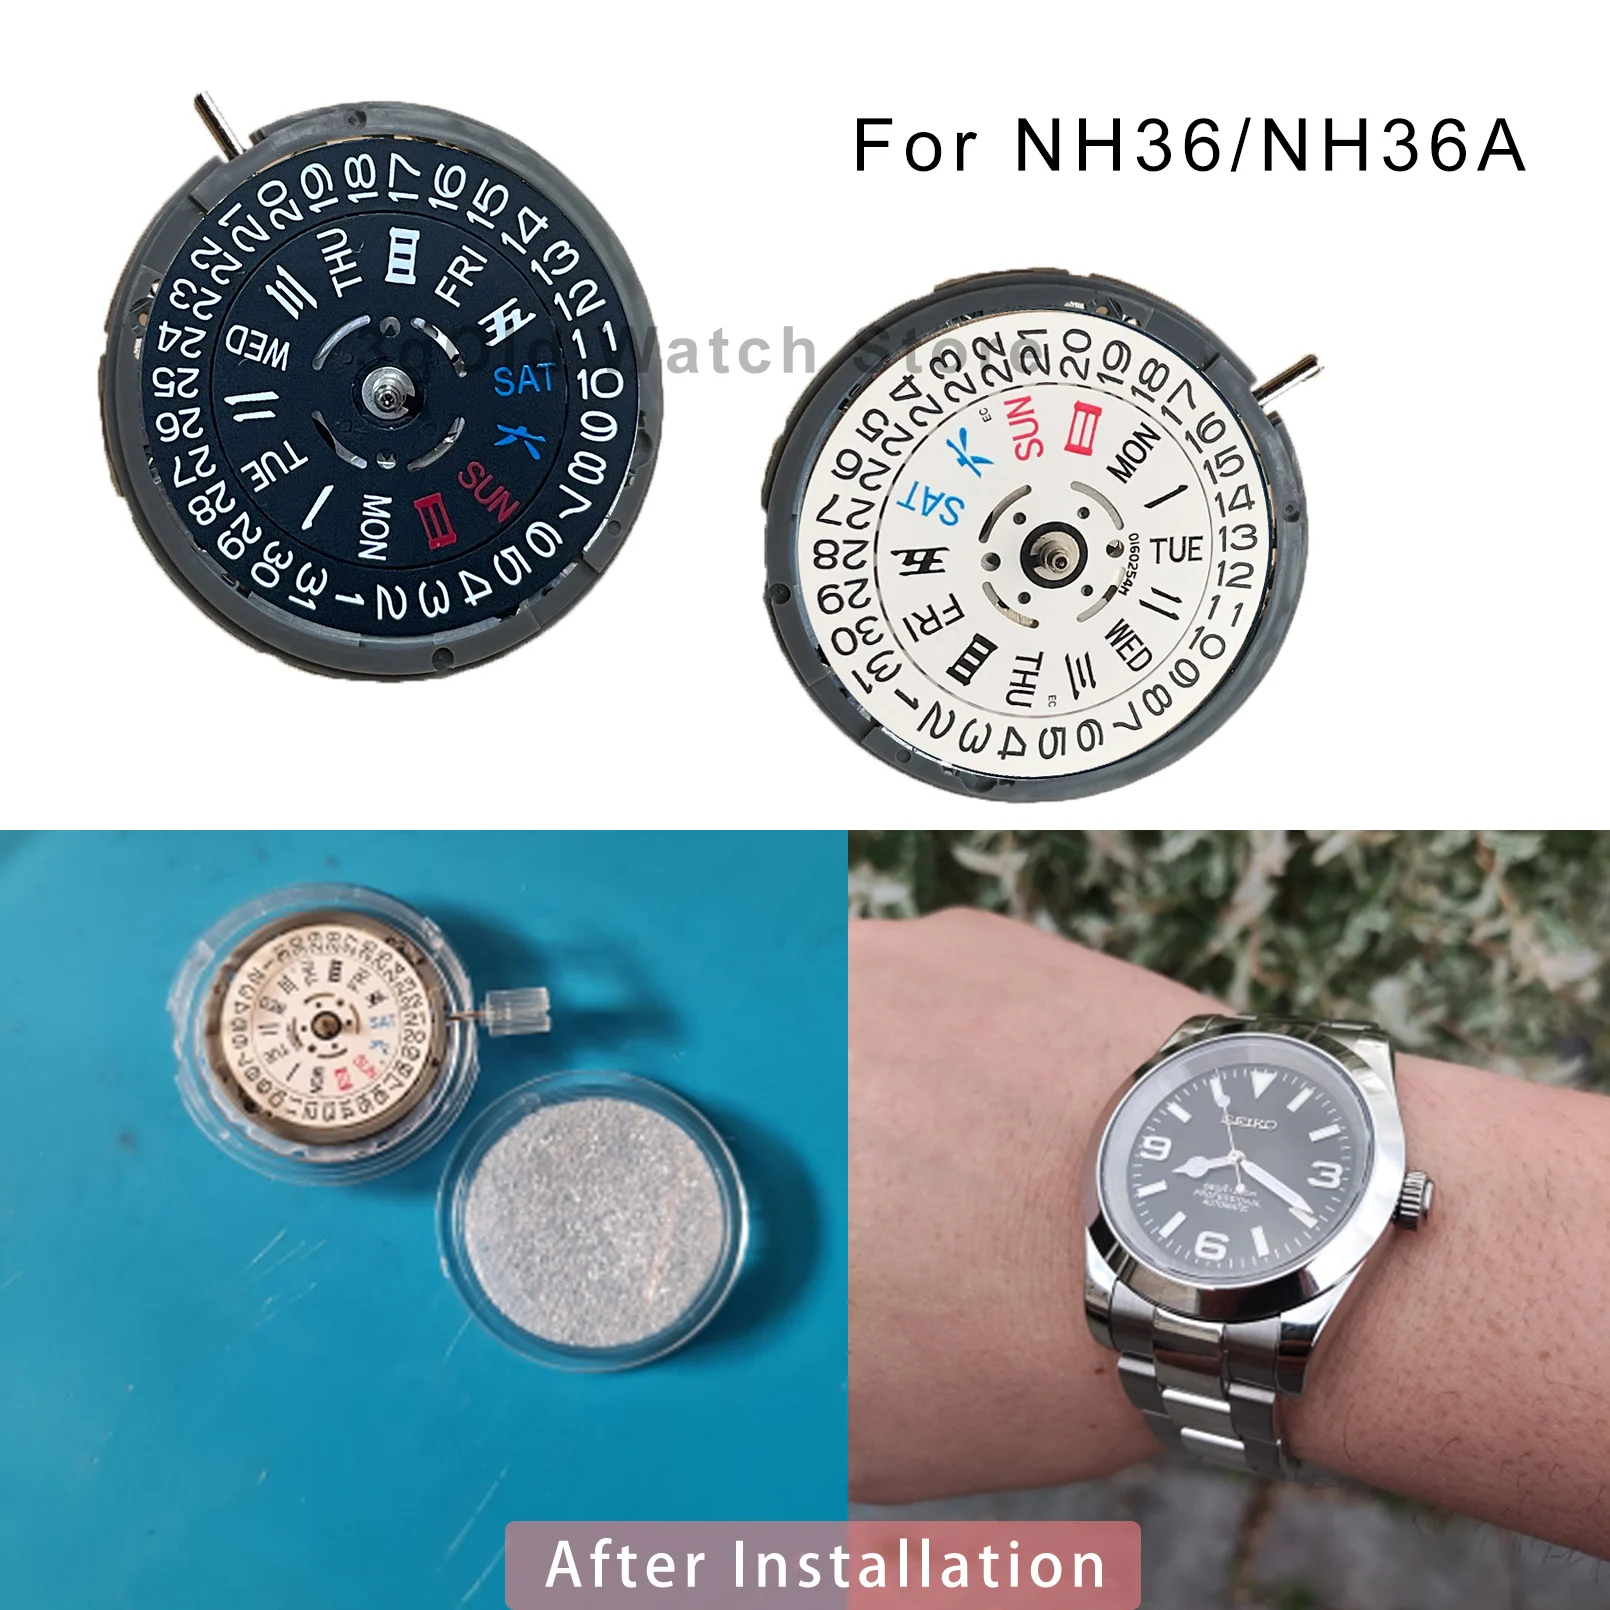 

Автоматический механизм SEIKO NH36NH36A, механические часы с автоподзаводом и быстрой настройкой даты, 24 Драгоценности, замена японских часов